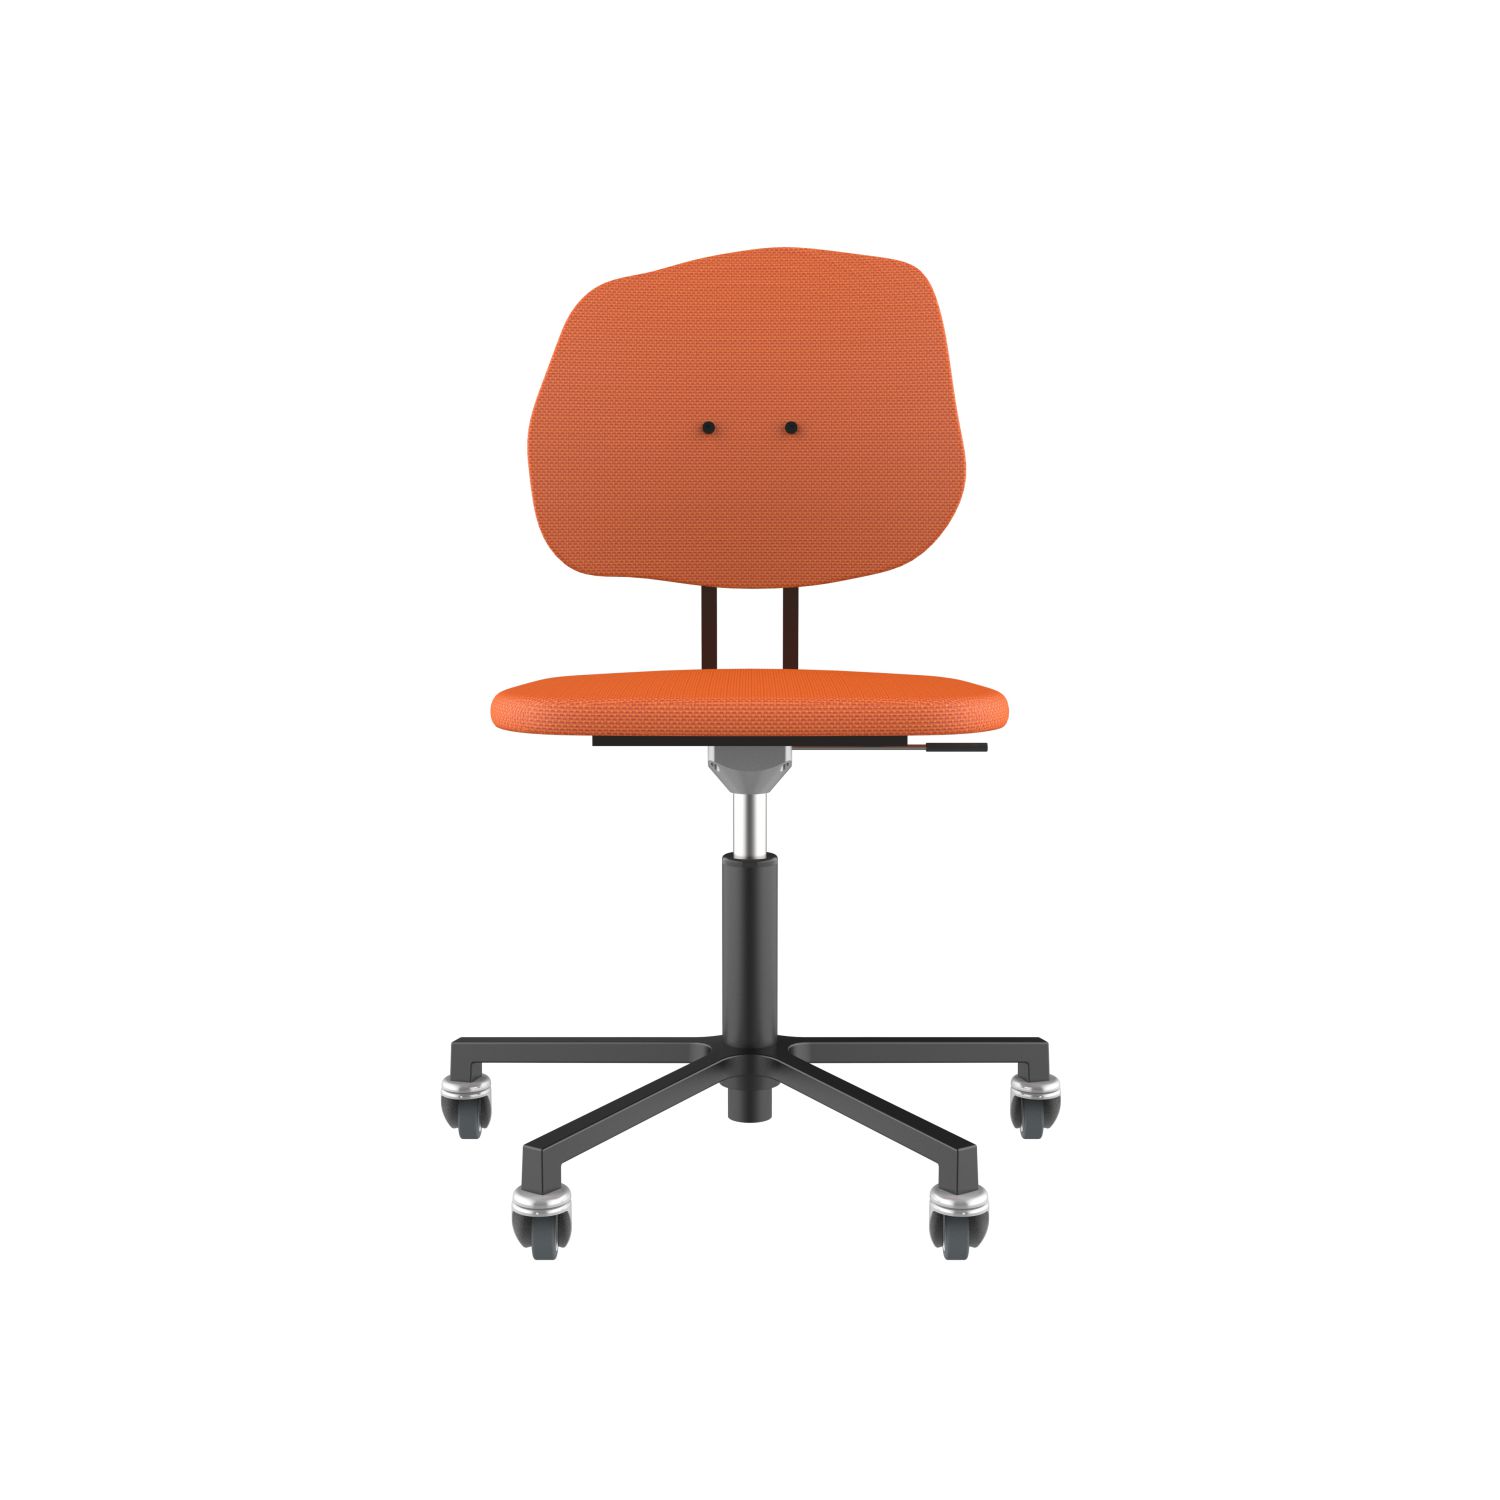 lensvelt maarten baas office chair without armrests backrest g burn orange 102 black ral9005 soft wheels